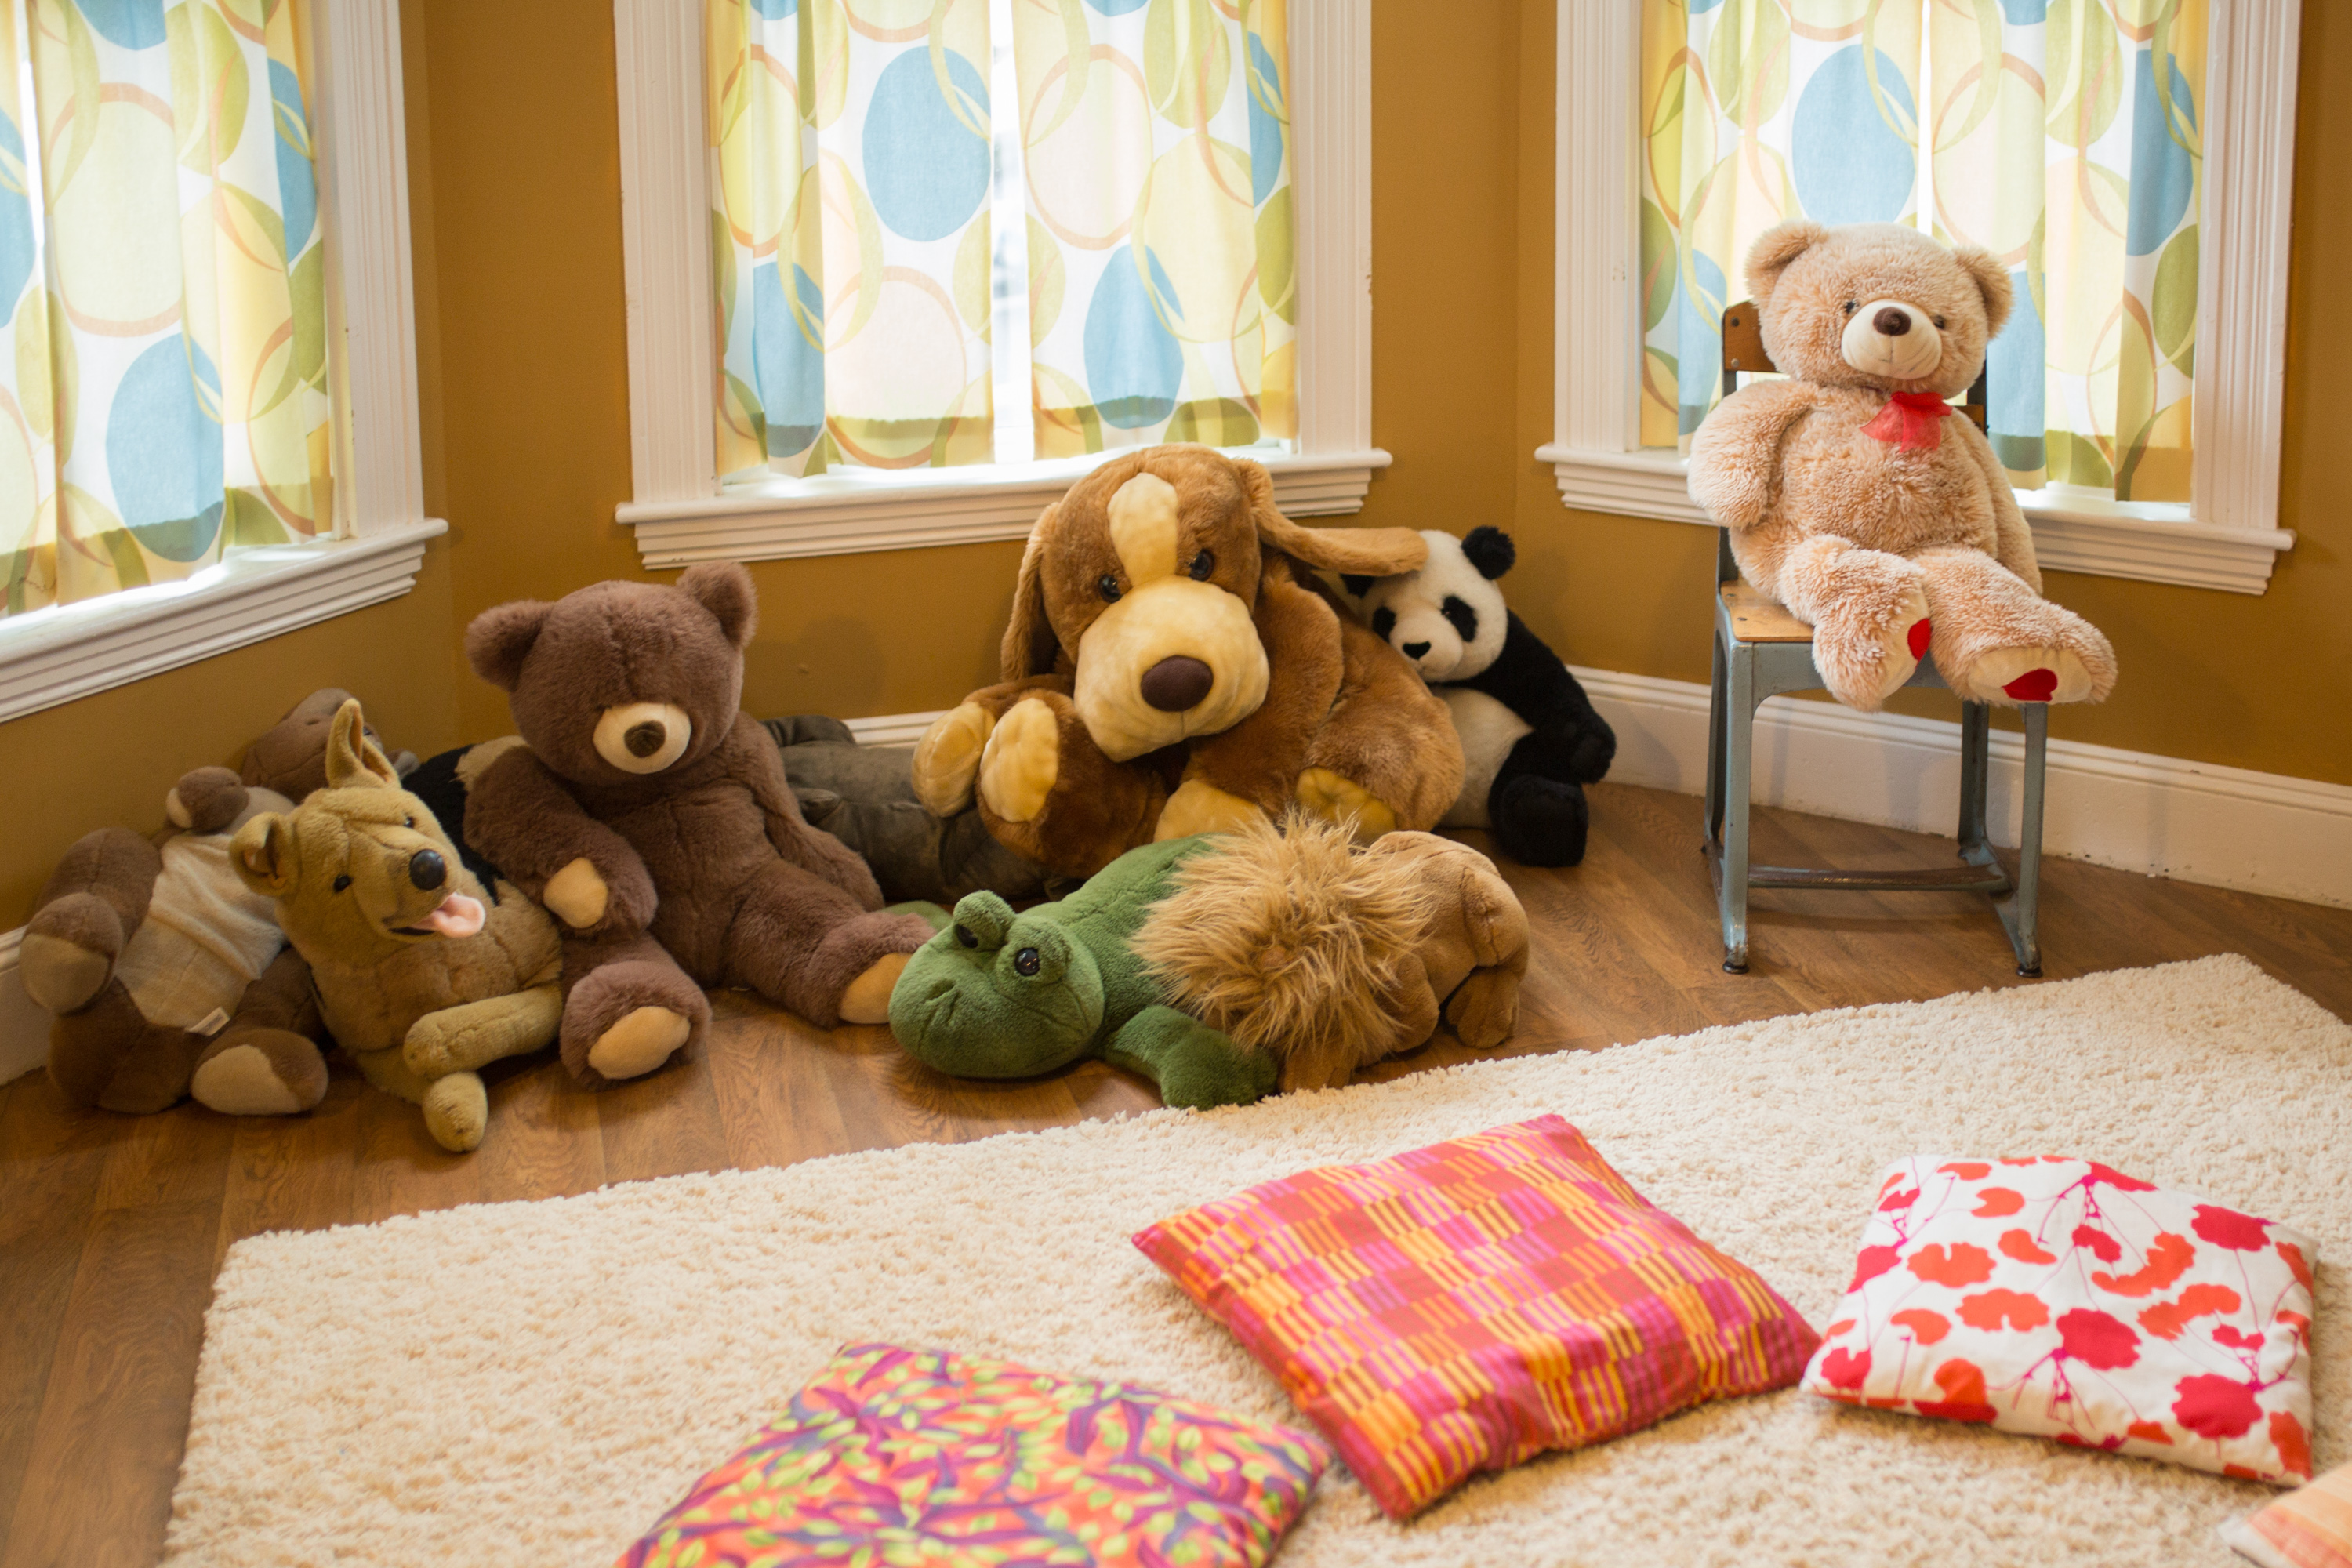 A room with teddy bears and floor pillows.